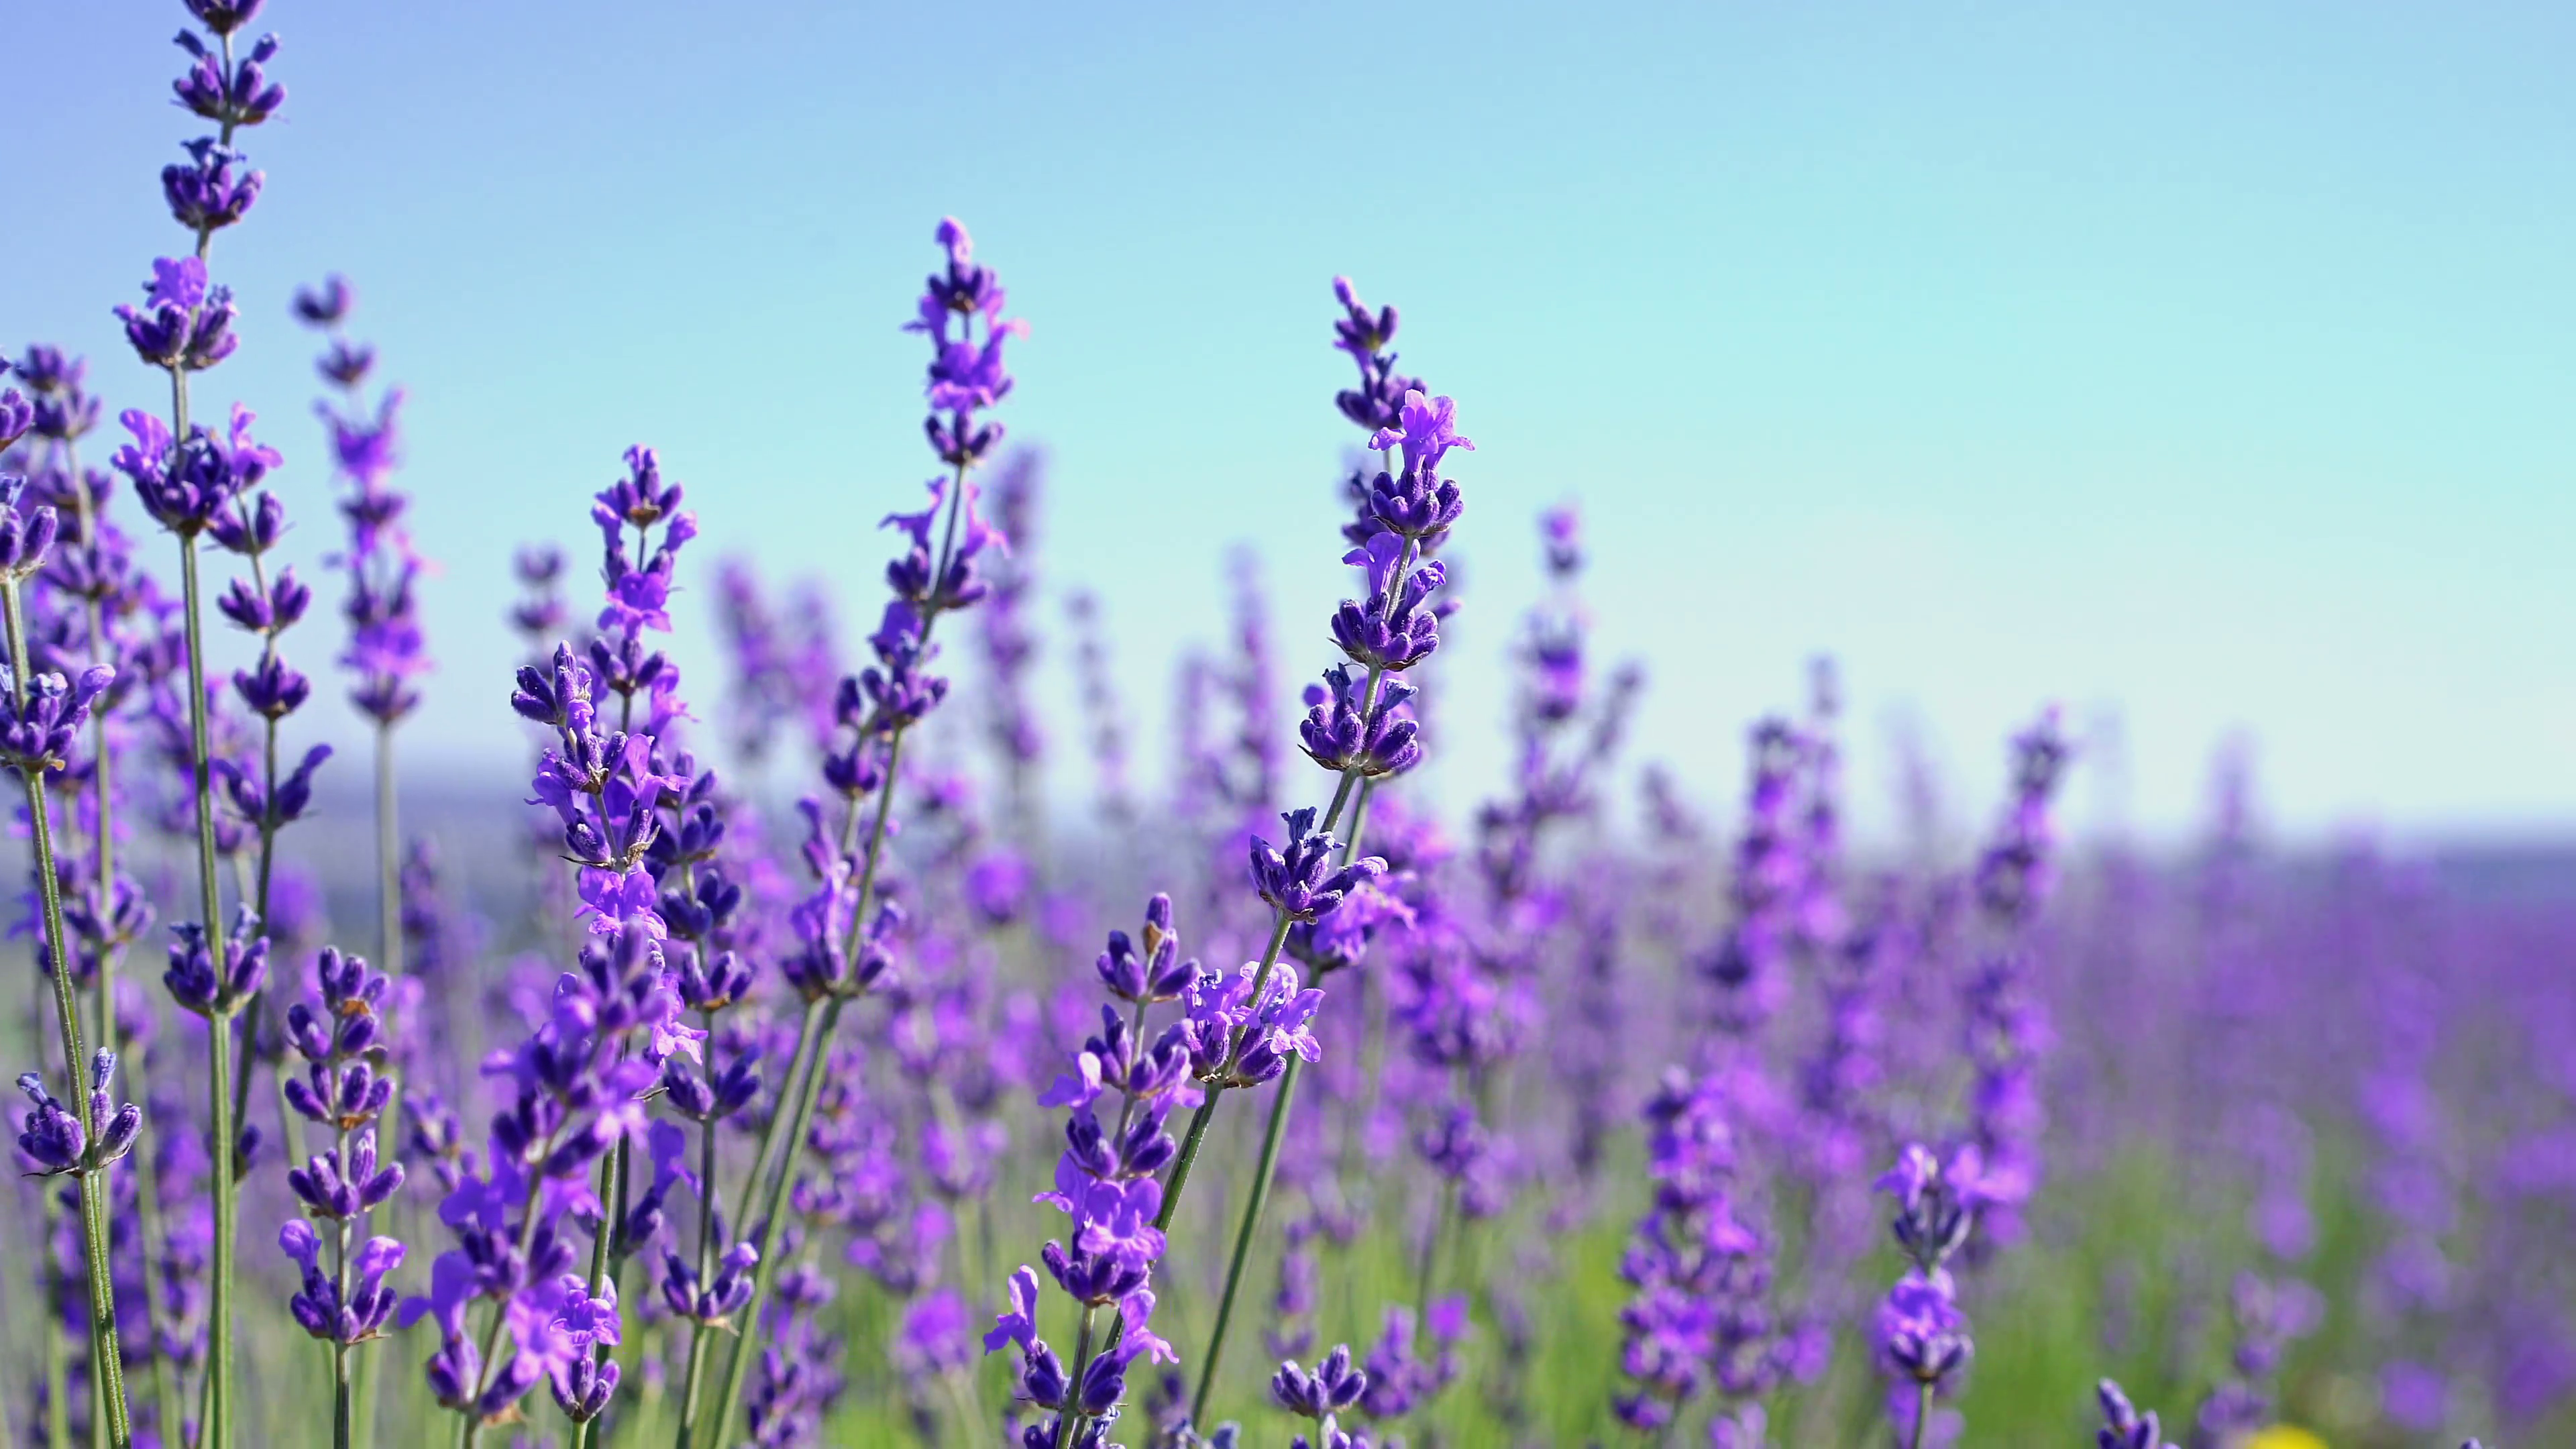 Tổng hợp hình ảnh hoa lavender khô đẹp nhất – Loài hoa may mắn, hạnh phúc - [Kích thước hình ảnh: 3840x2160 px]